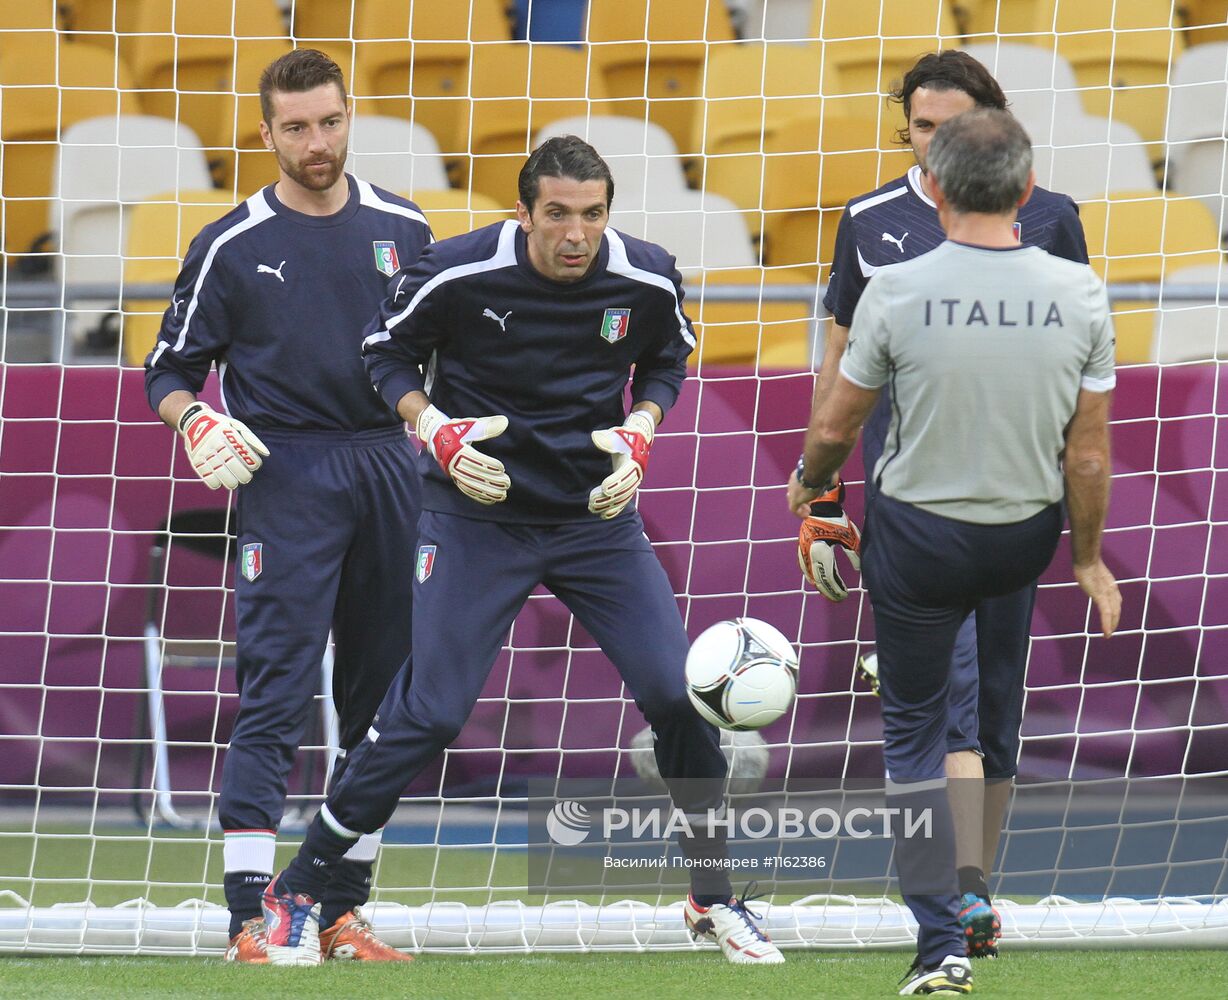 Футбол. ЕВРО - 2012. Тренировка сборной Италии